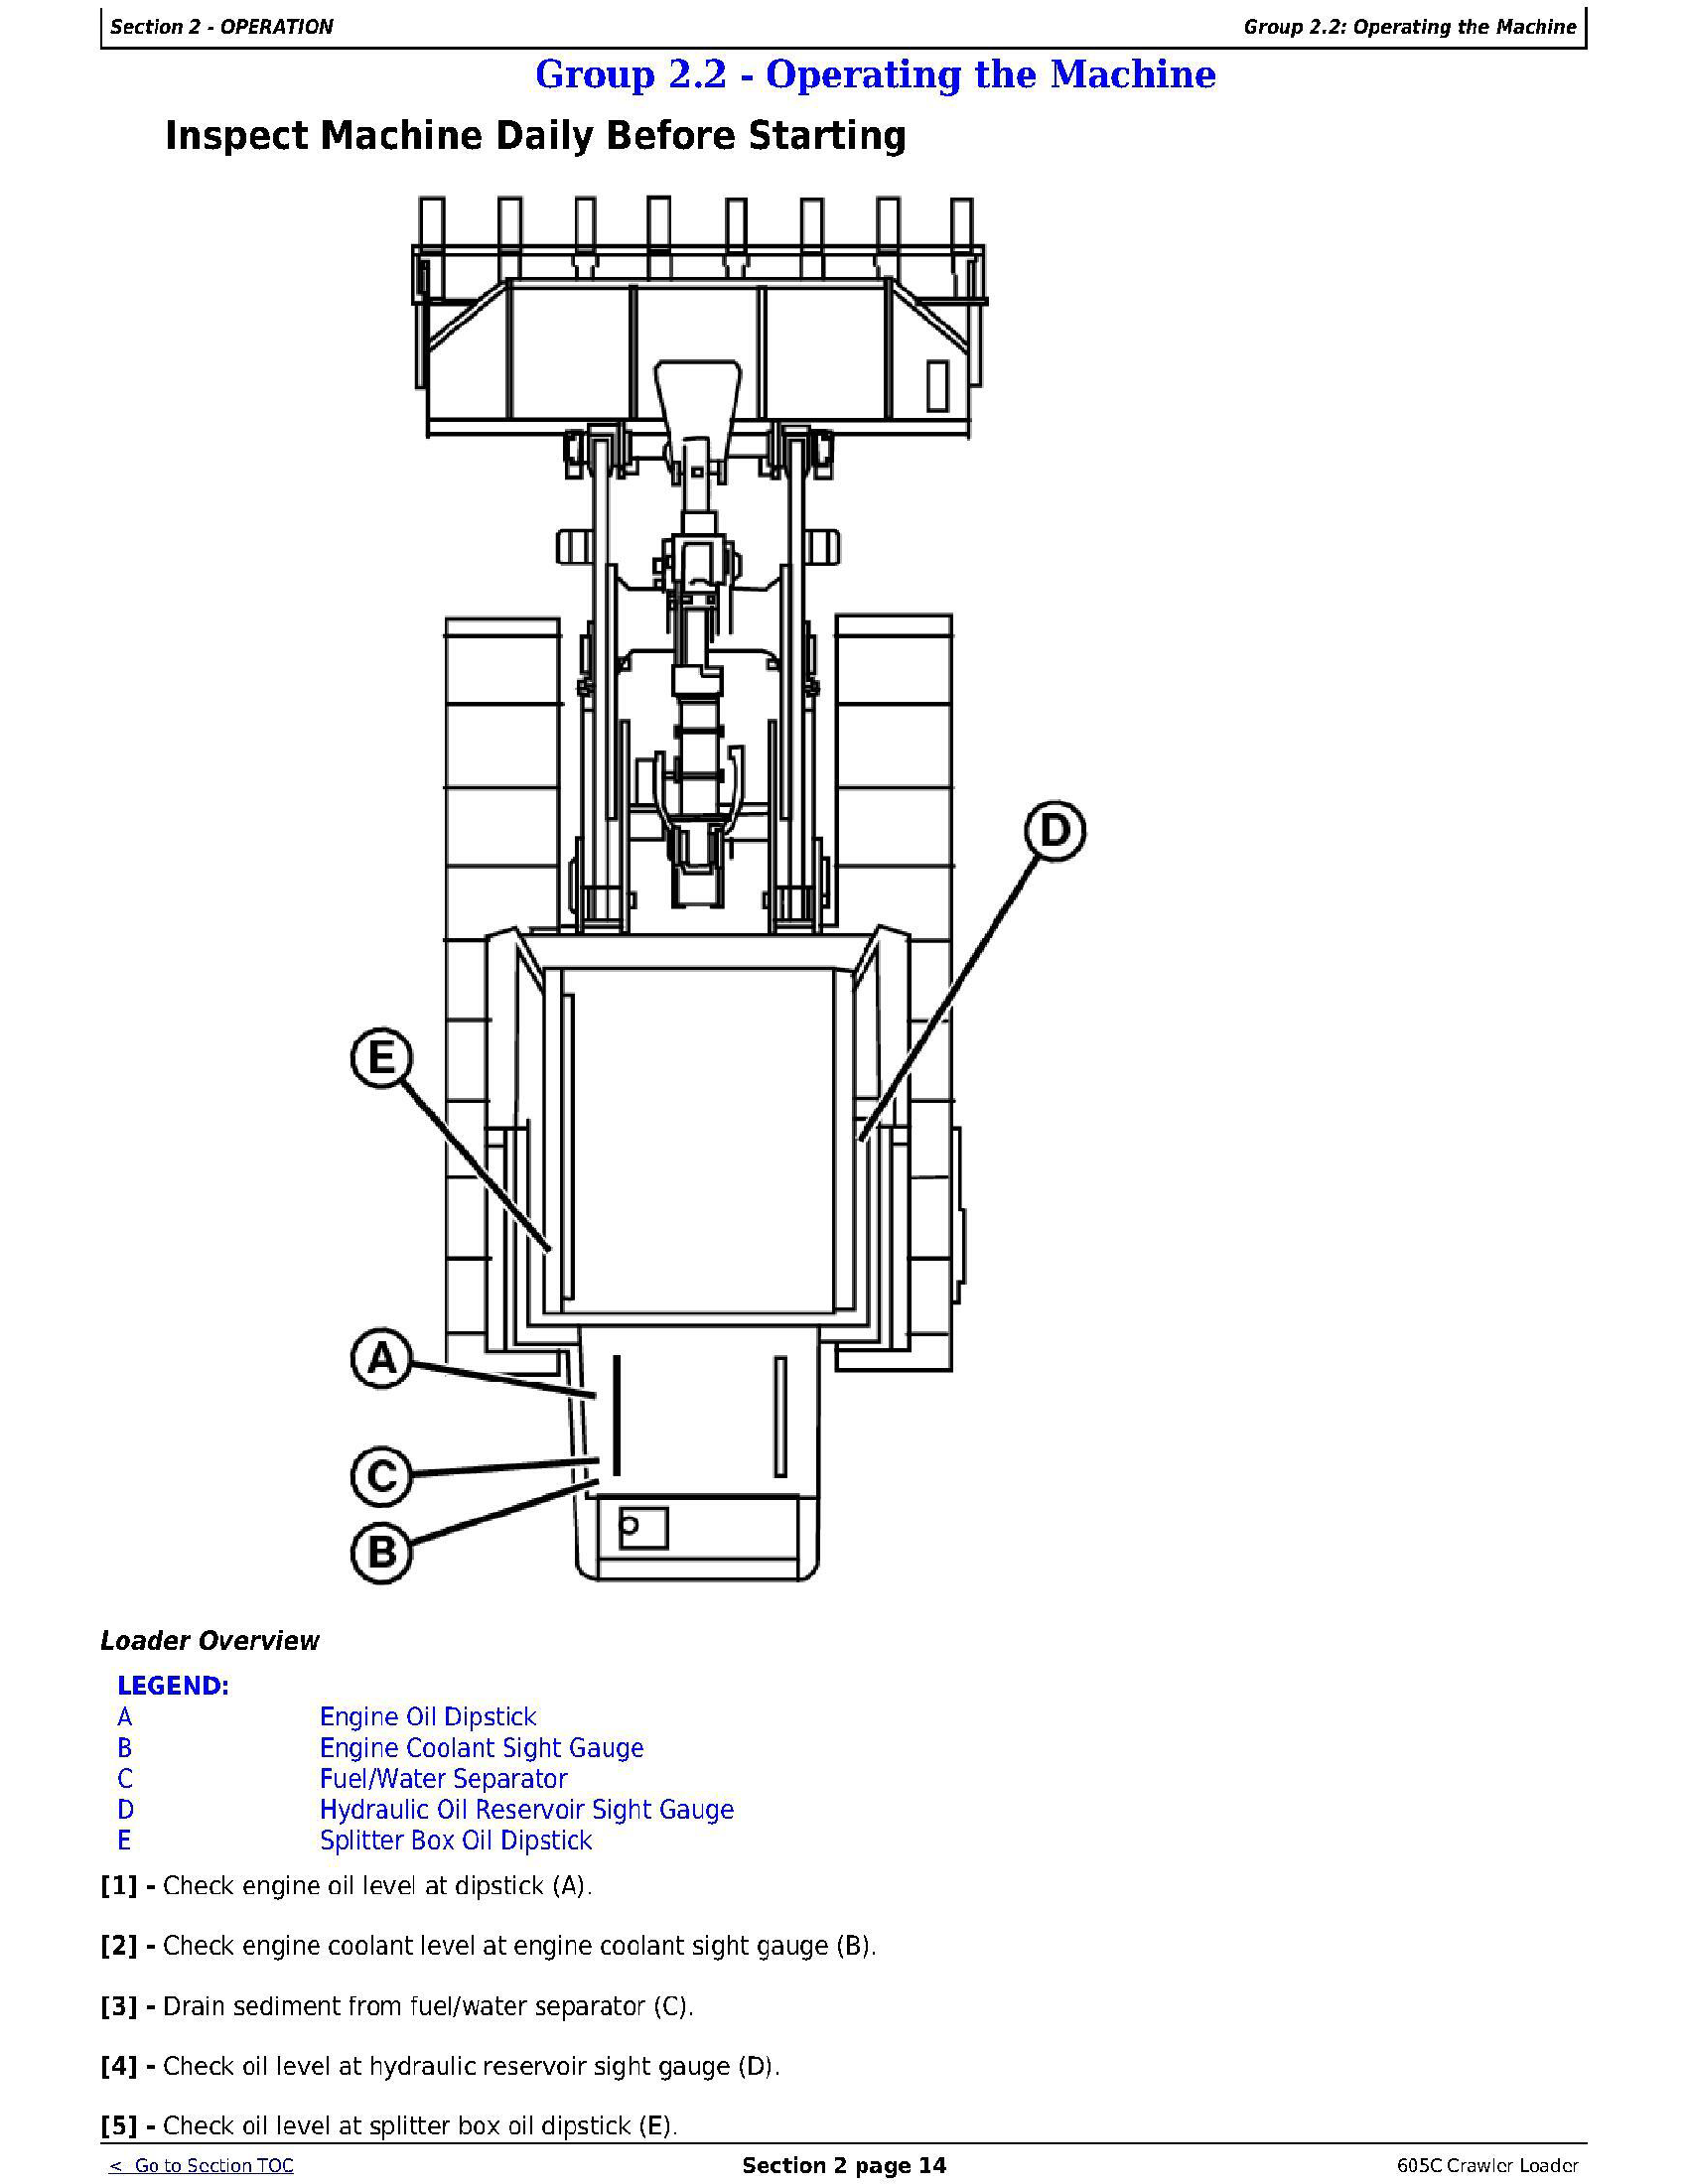 John Deere 605C manual pdf